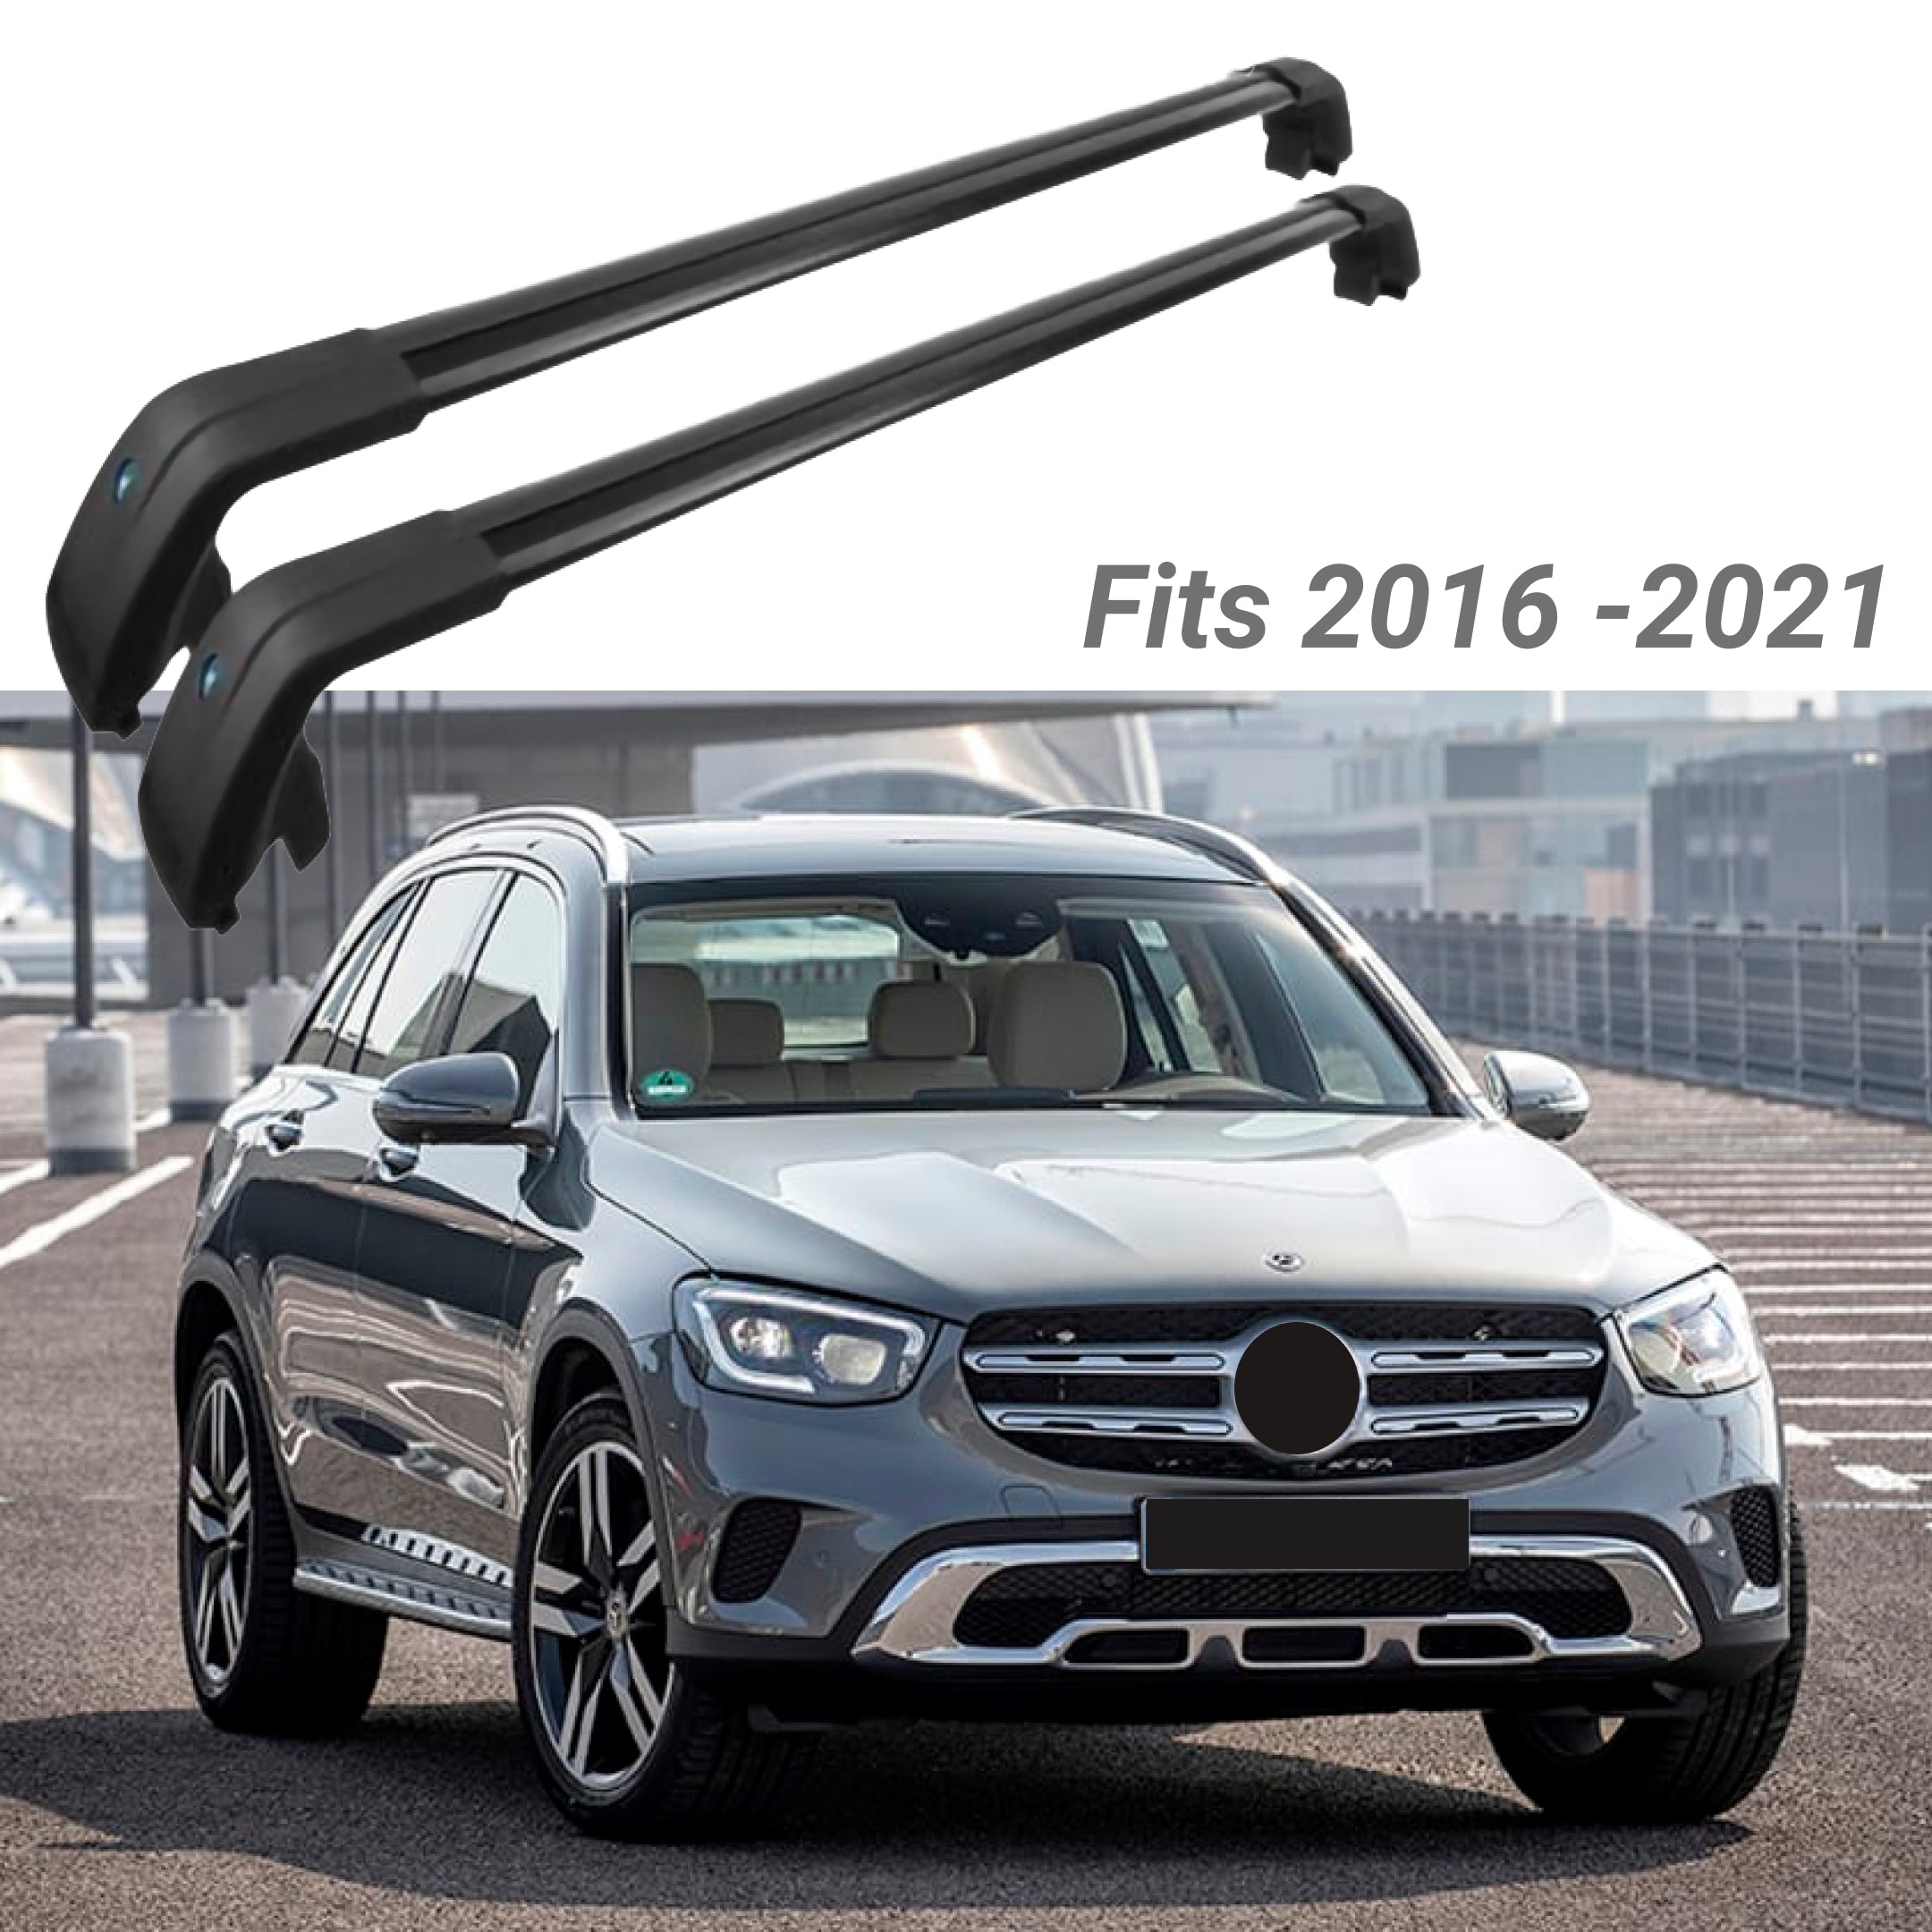 Fit 2016-2021 Mercedes Benz GLC Black Roof Rack Baggage Luggage Cross Bar Crossbar - 0